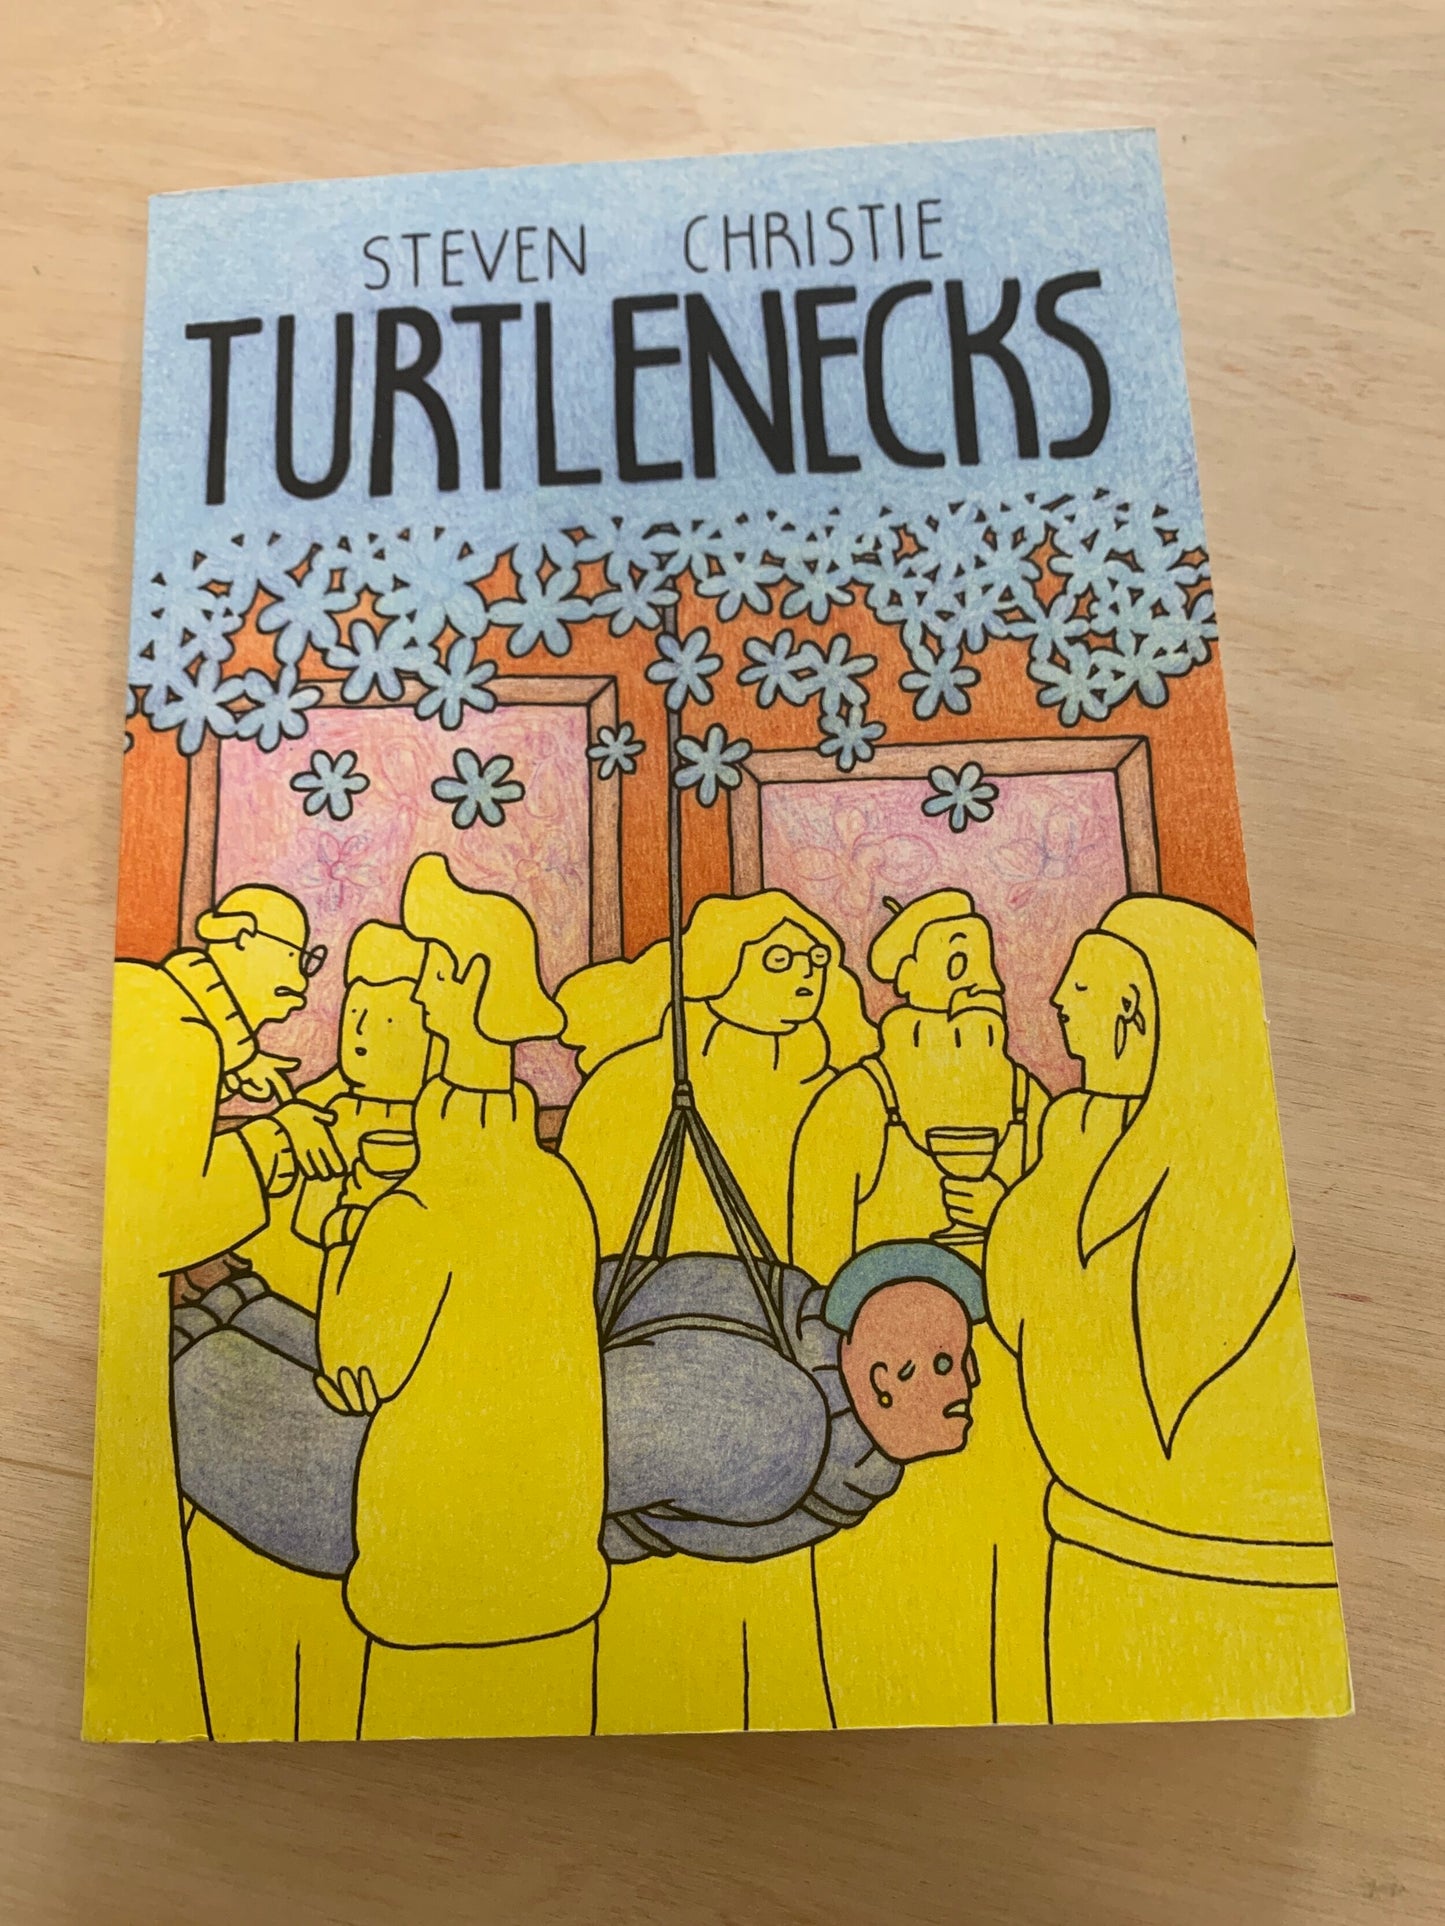 Turtlenecks